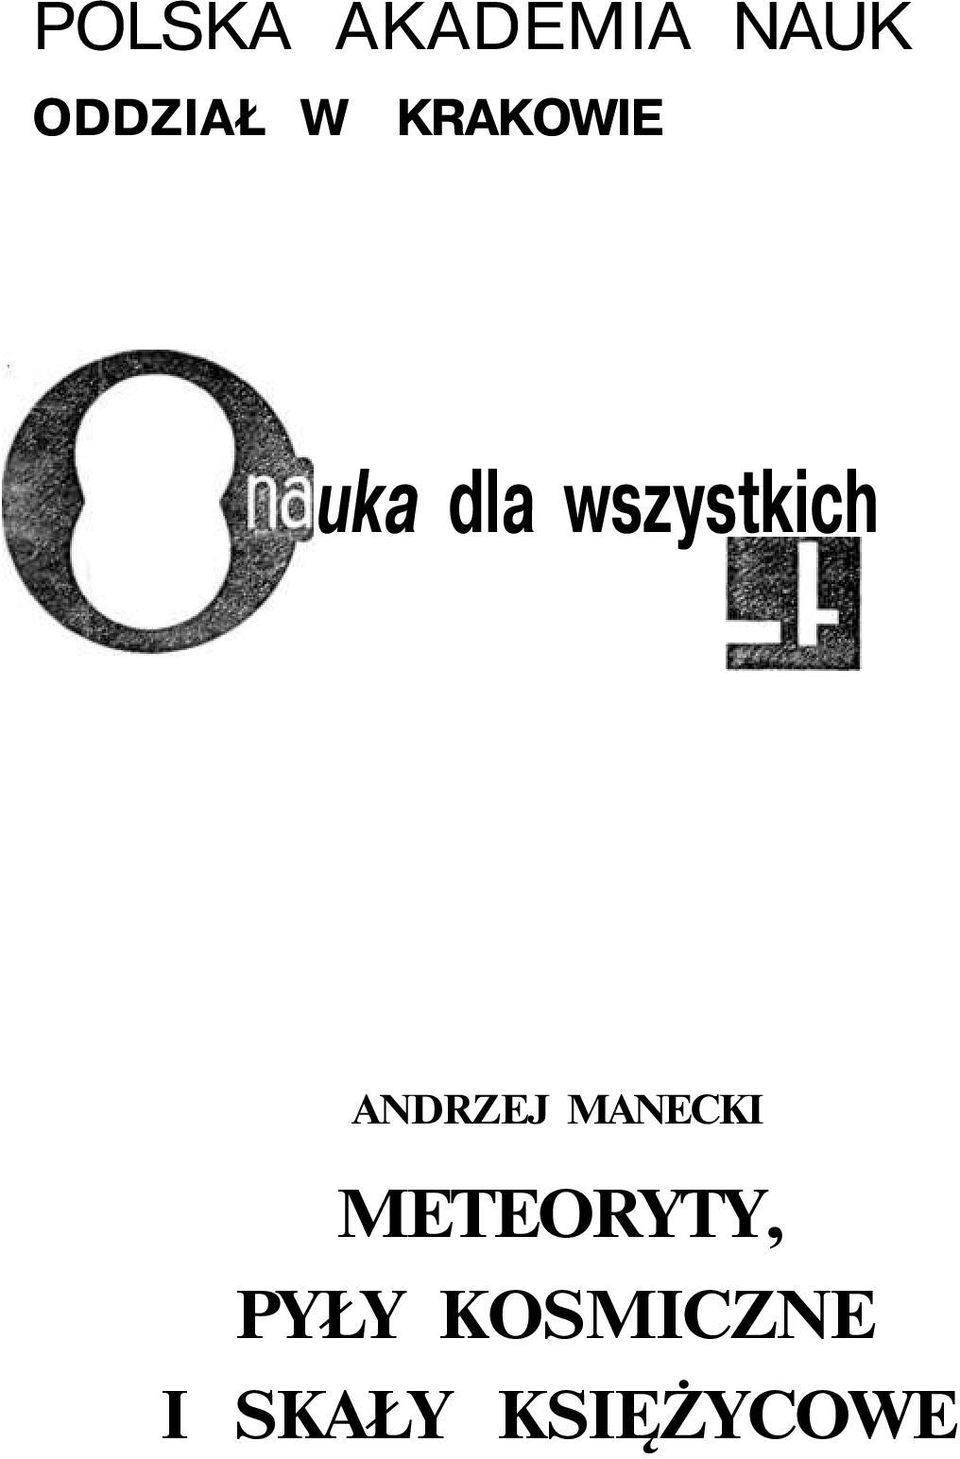 ANDRZEJ MANECKI METEORYTY,